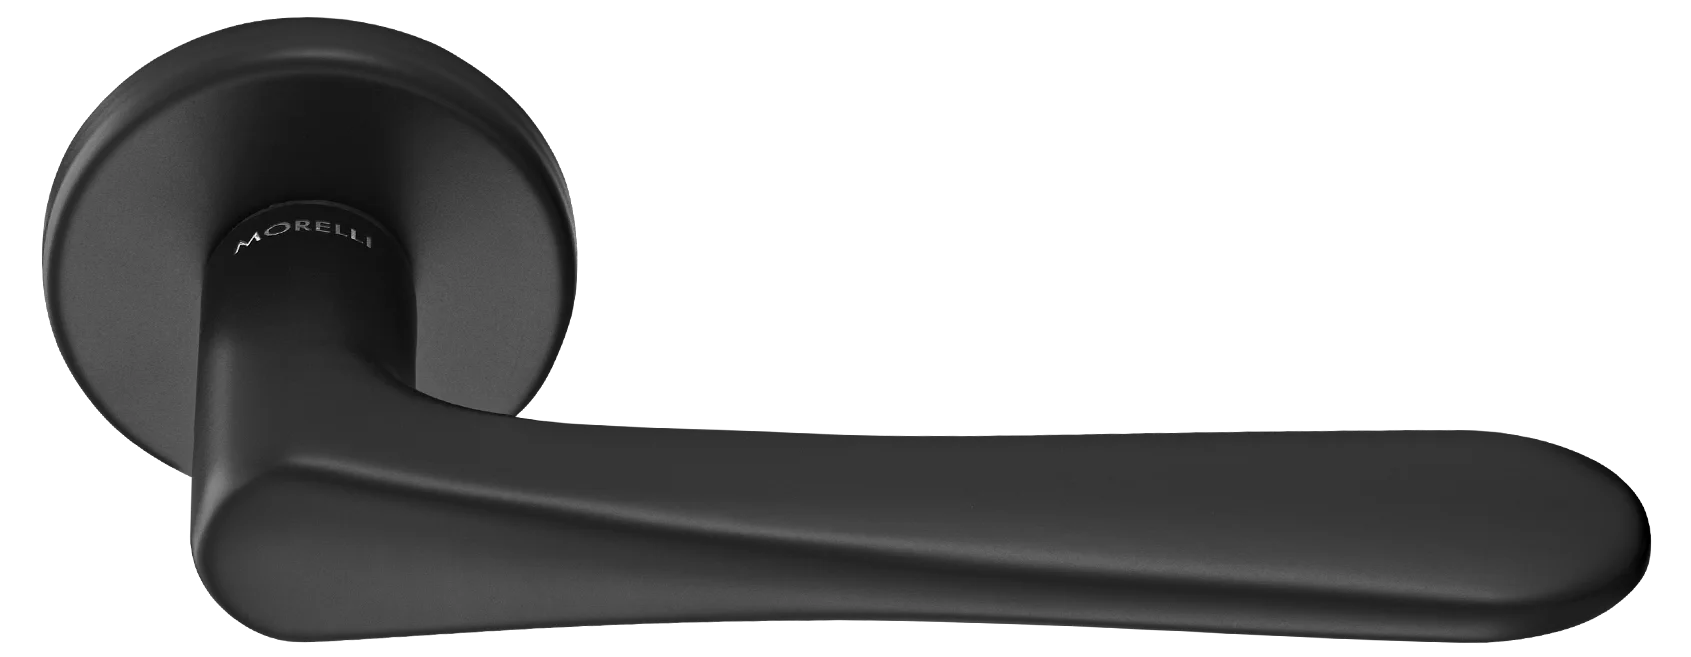 AULA R5 NERO, ручка дверная на розетке 7мм, цвет -  черный фото купить Махачкала